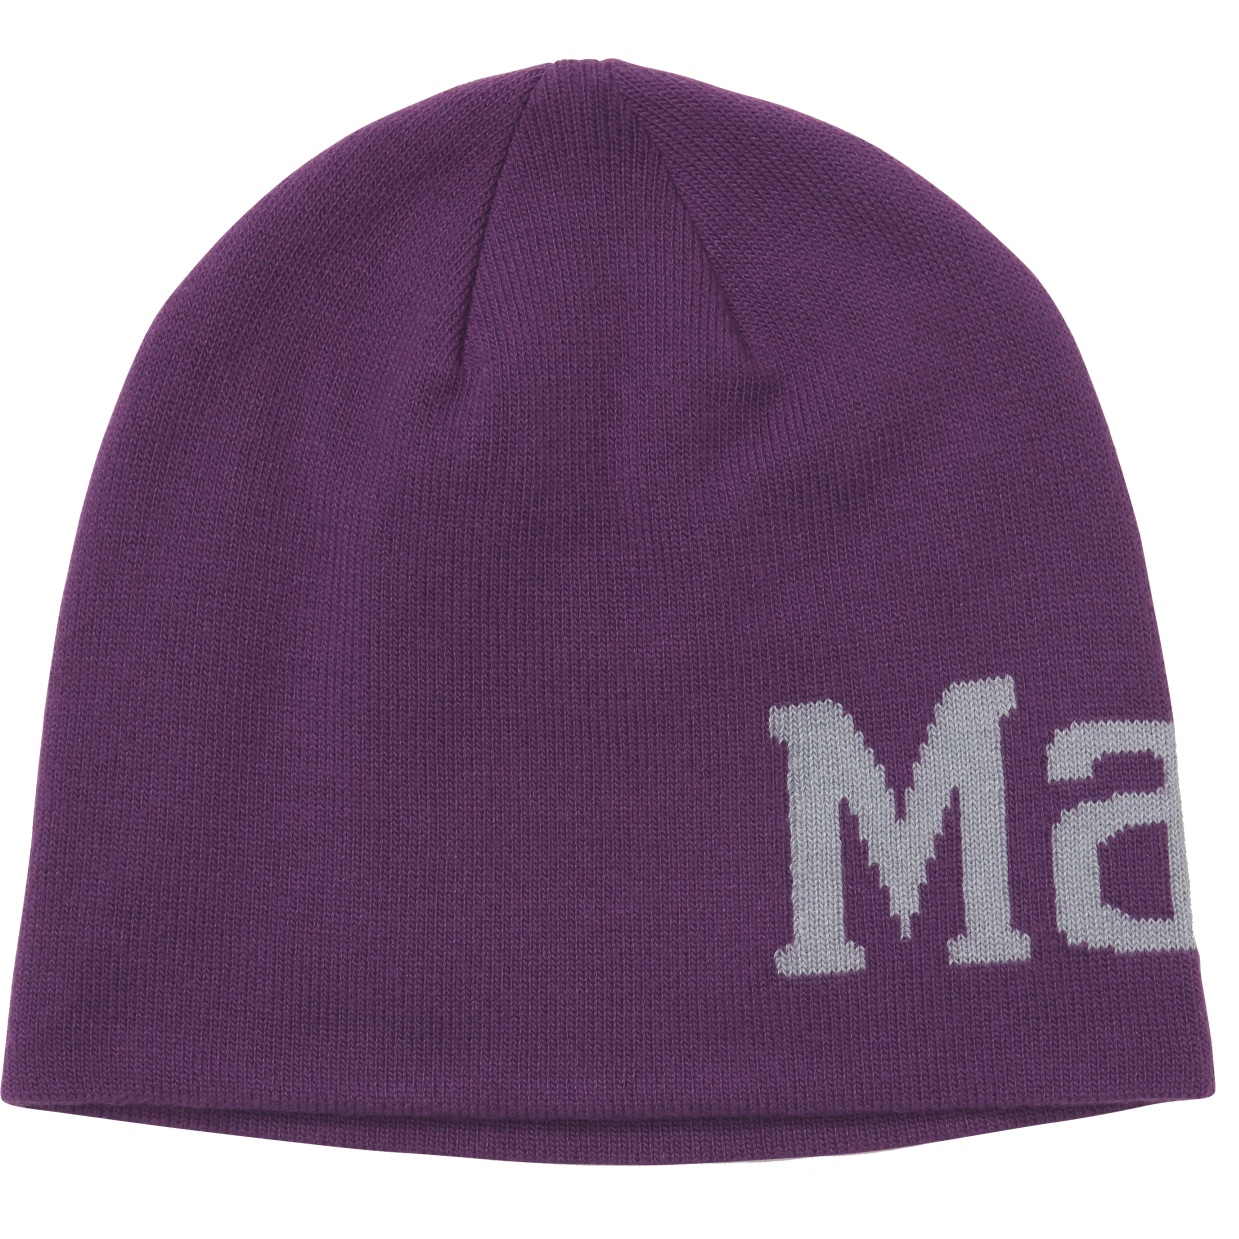 Produktbild von Marmot Summit Mütze - purple fig/sleet